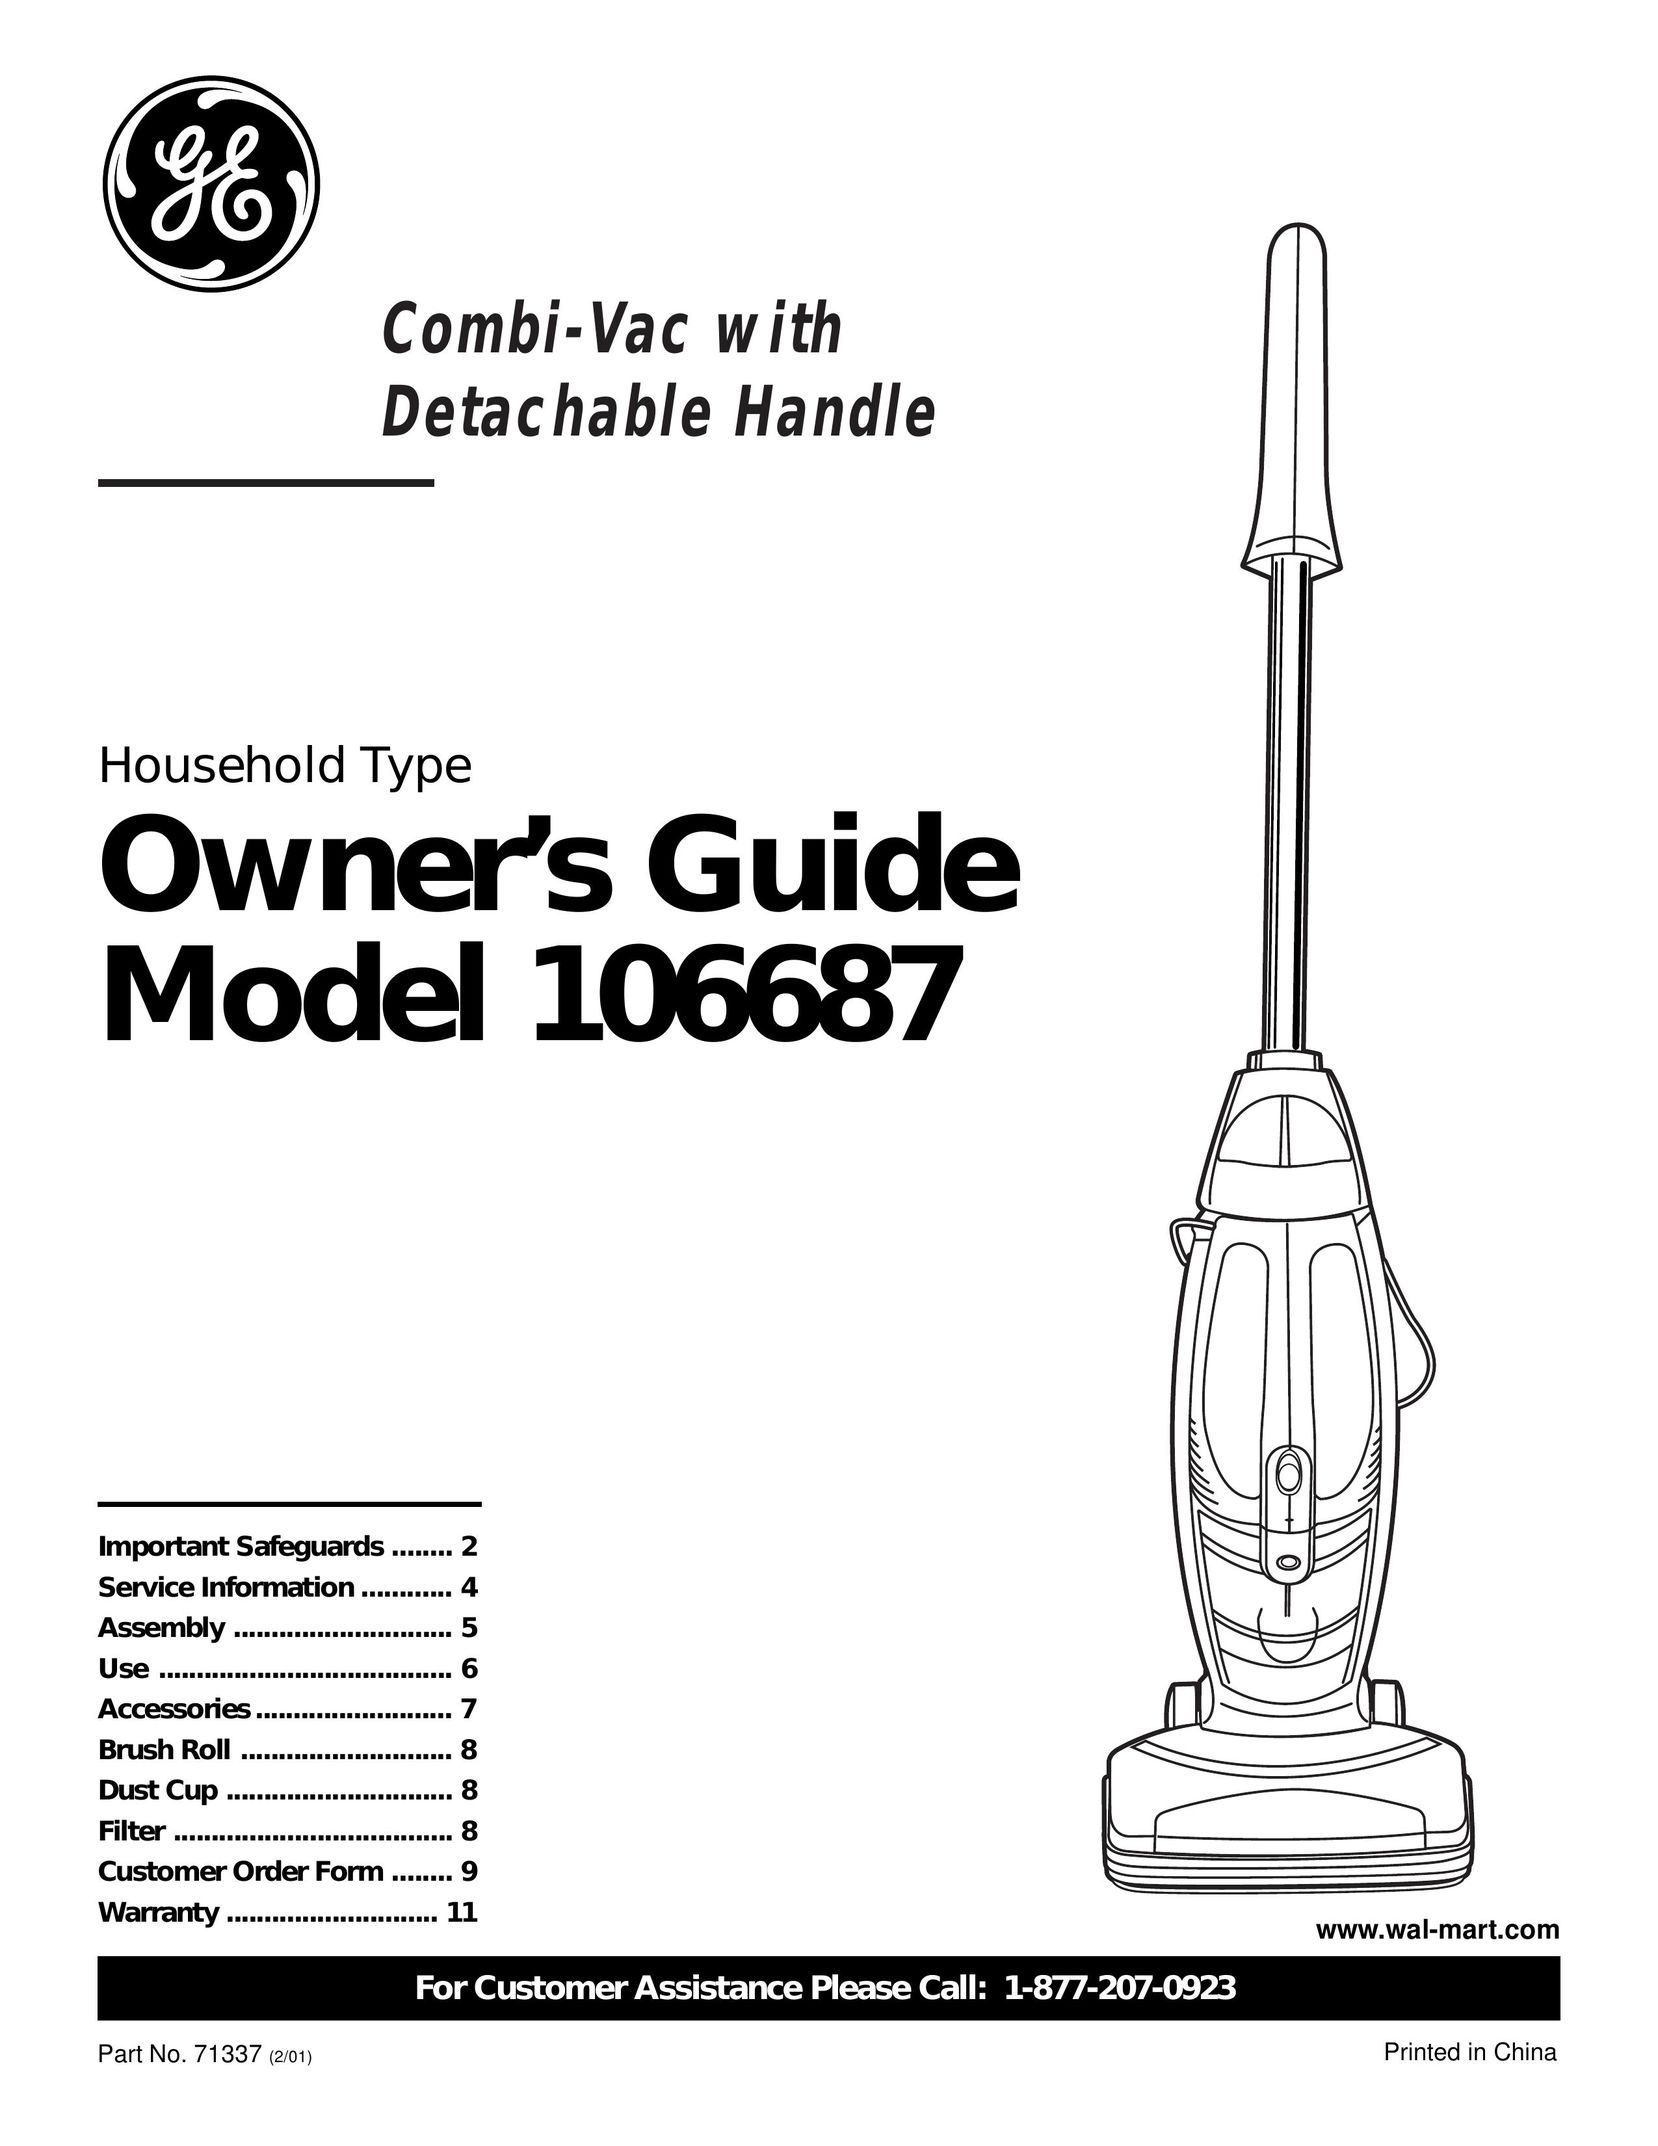 GE 71337 Vacuum Cleaner User Manual